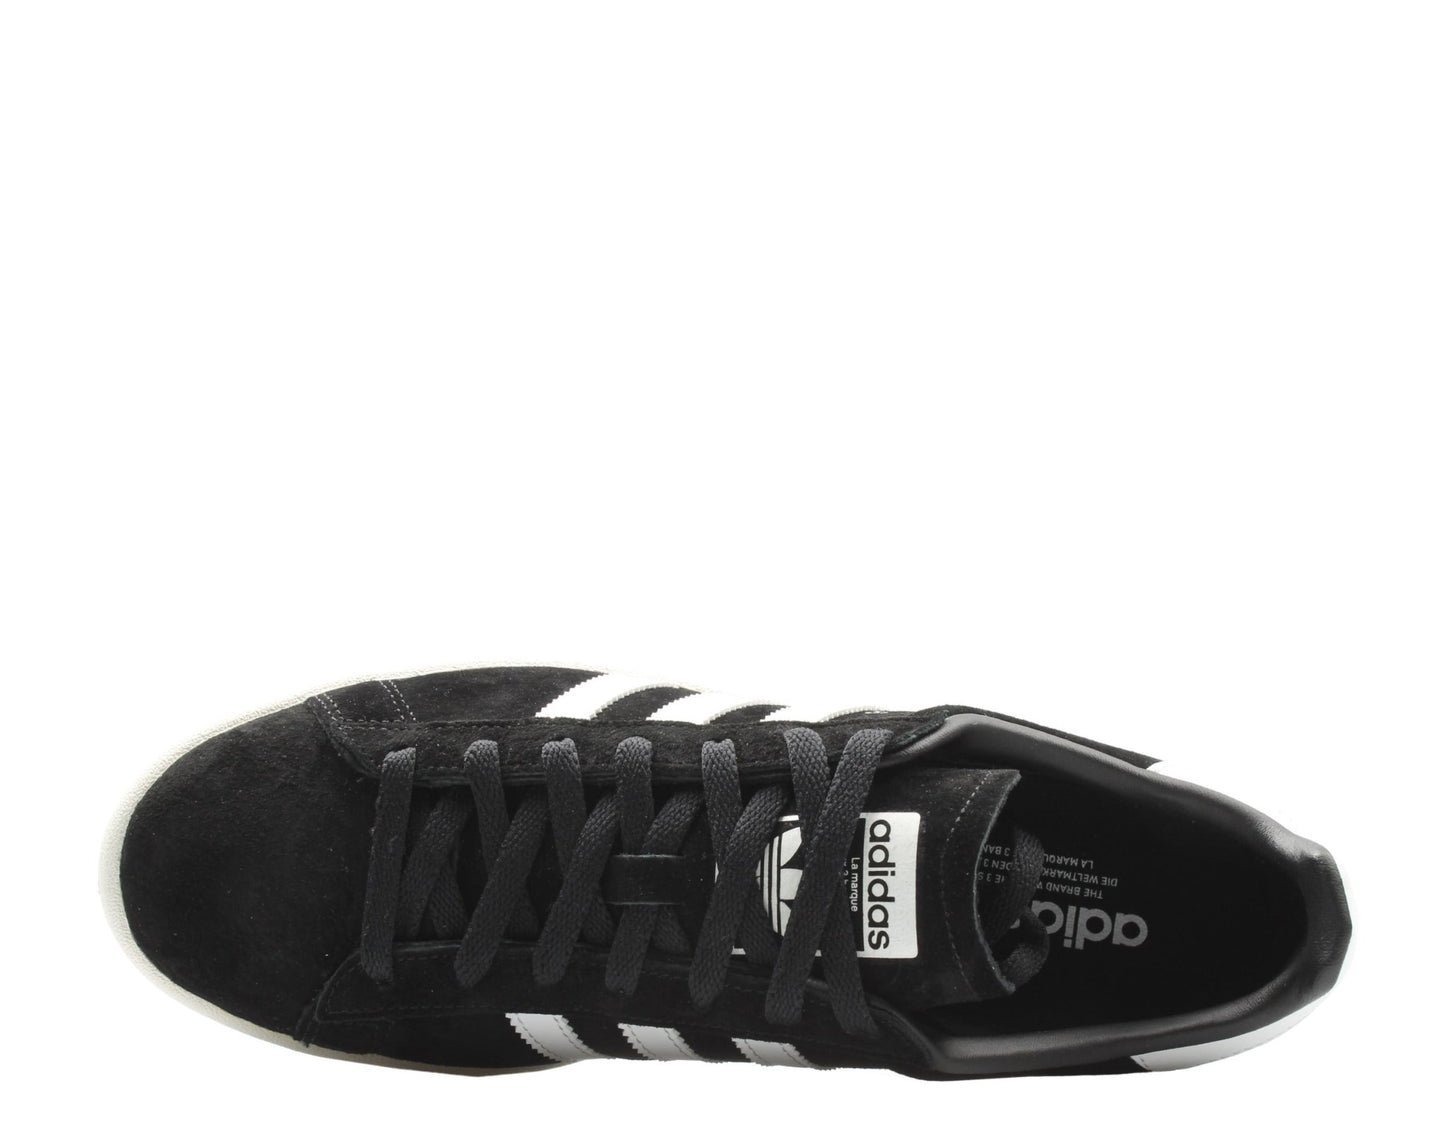 Adidas Originals Campus OG Black/White Men's Casual Shoes BZ0084 - Becauze